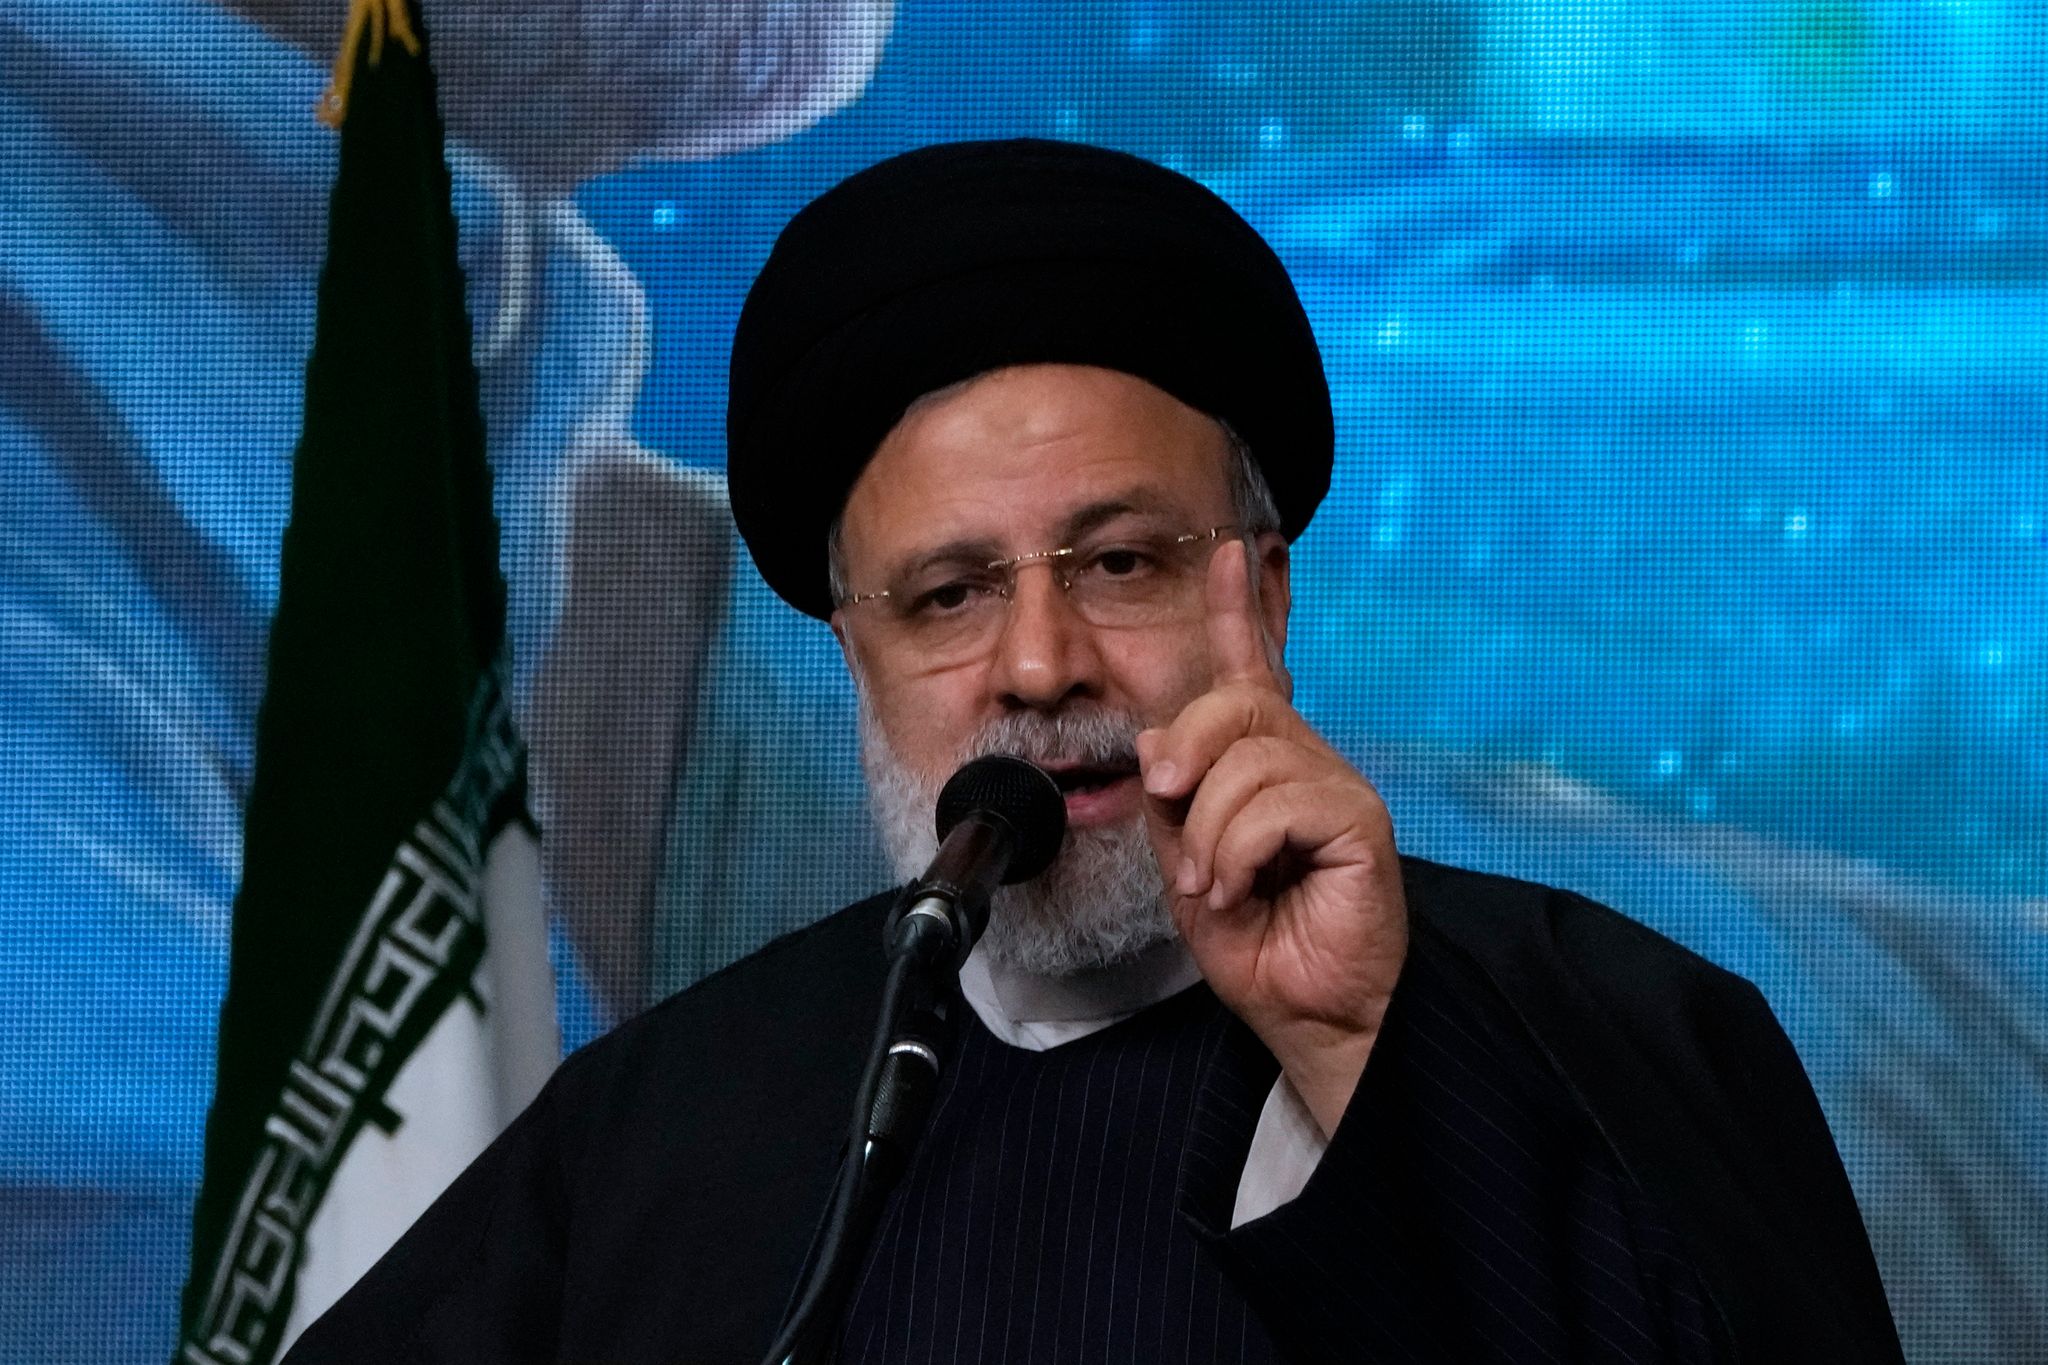 Der iranische Präsident Ebrahim Raisi hat eine entschiedene Reaktion angekündigt. Die Staatsführung verurteilte die Attacke aufs Schärfste, vermied aber Schuldzuweisungen. Foto: Vahid Salemi/AP/dpa